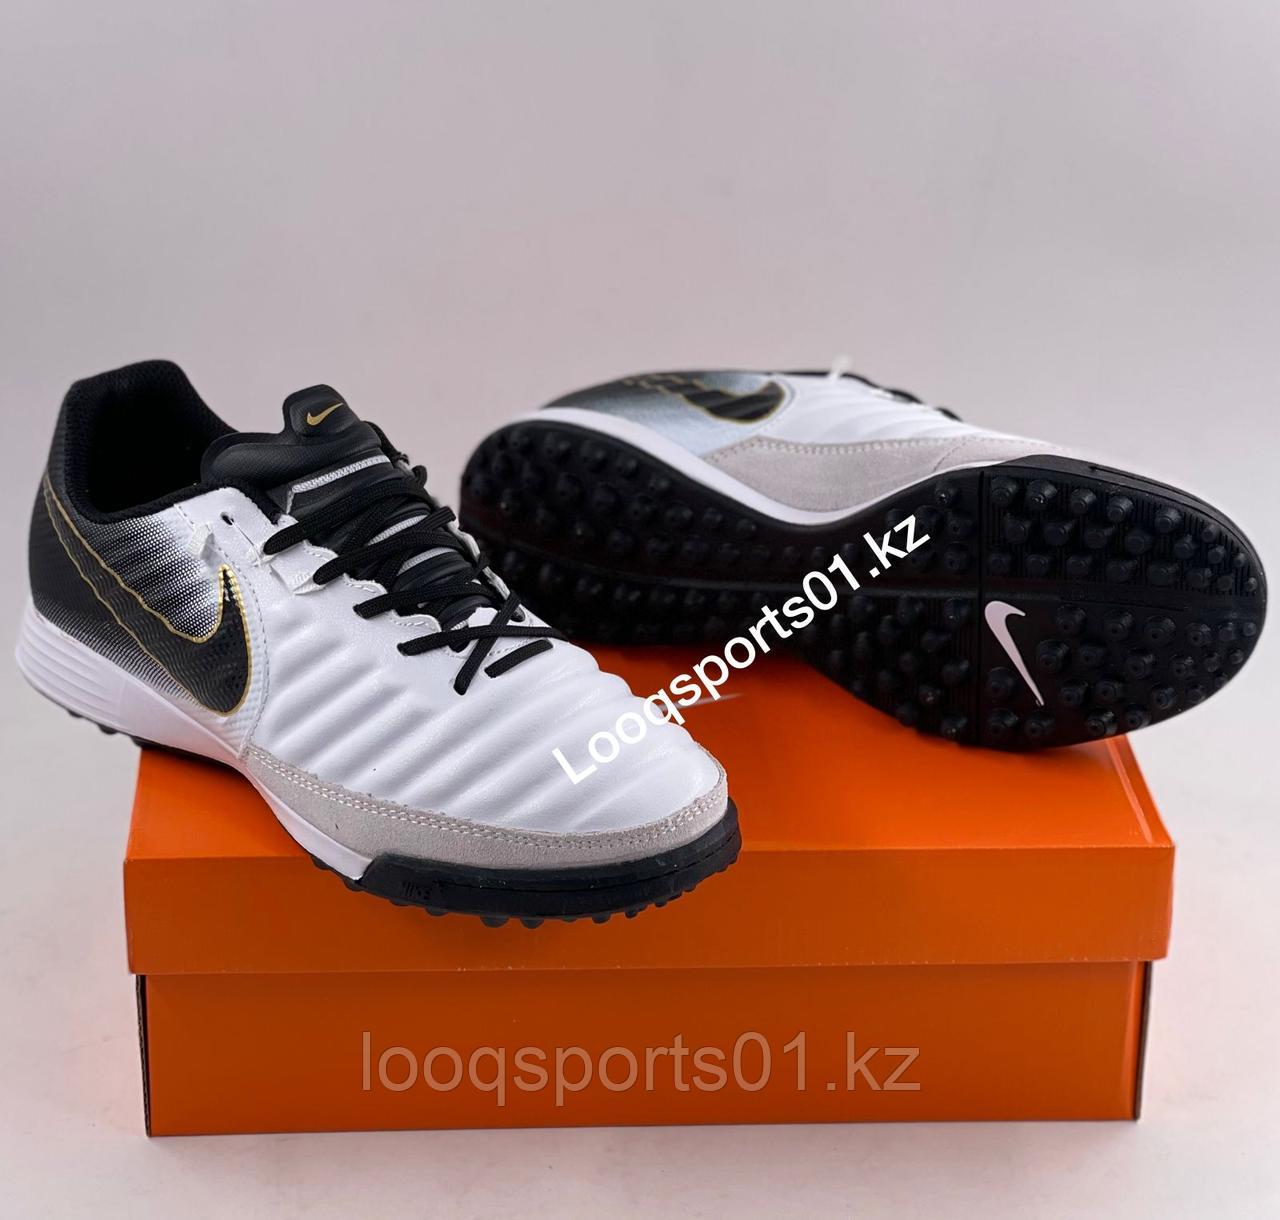 Футбольные бутсы сороконожки, миники (обувь для футбола) Nike Tiempo X